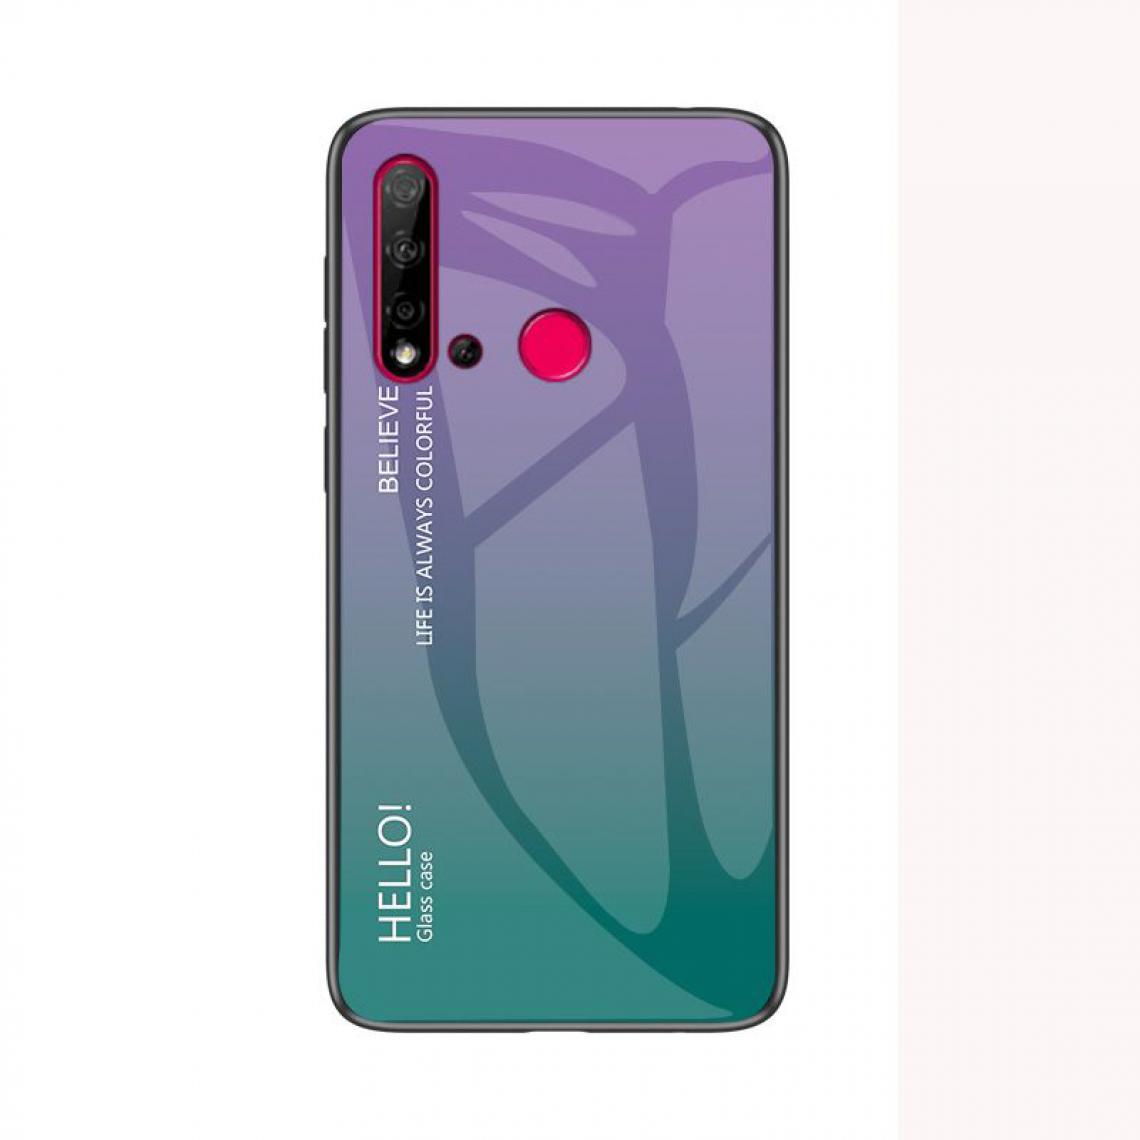 OtterBox - Housse Etui Coque de protection pour Huawei P20 Lite 2019 Arriere Rigide dégradé [Violet] - Coque, étui smartphone